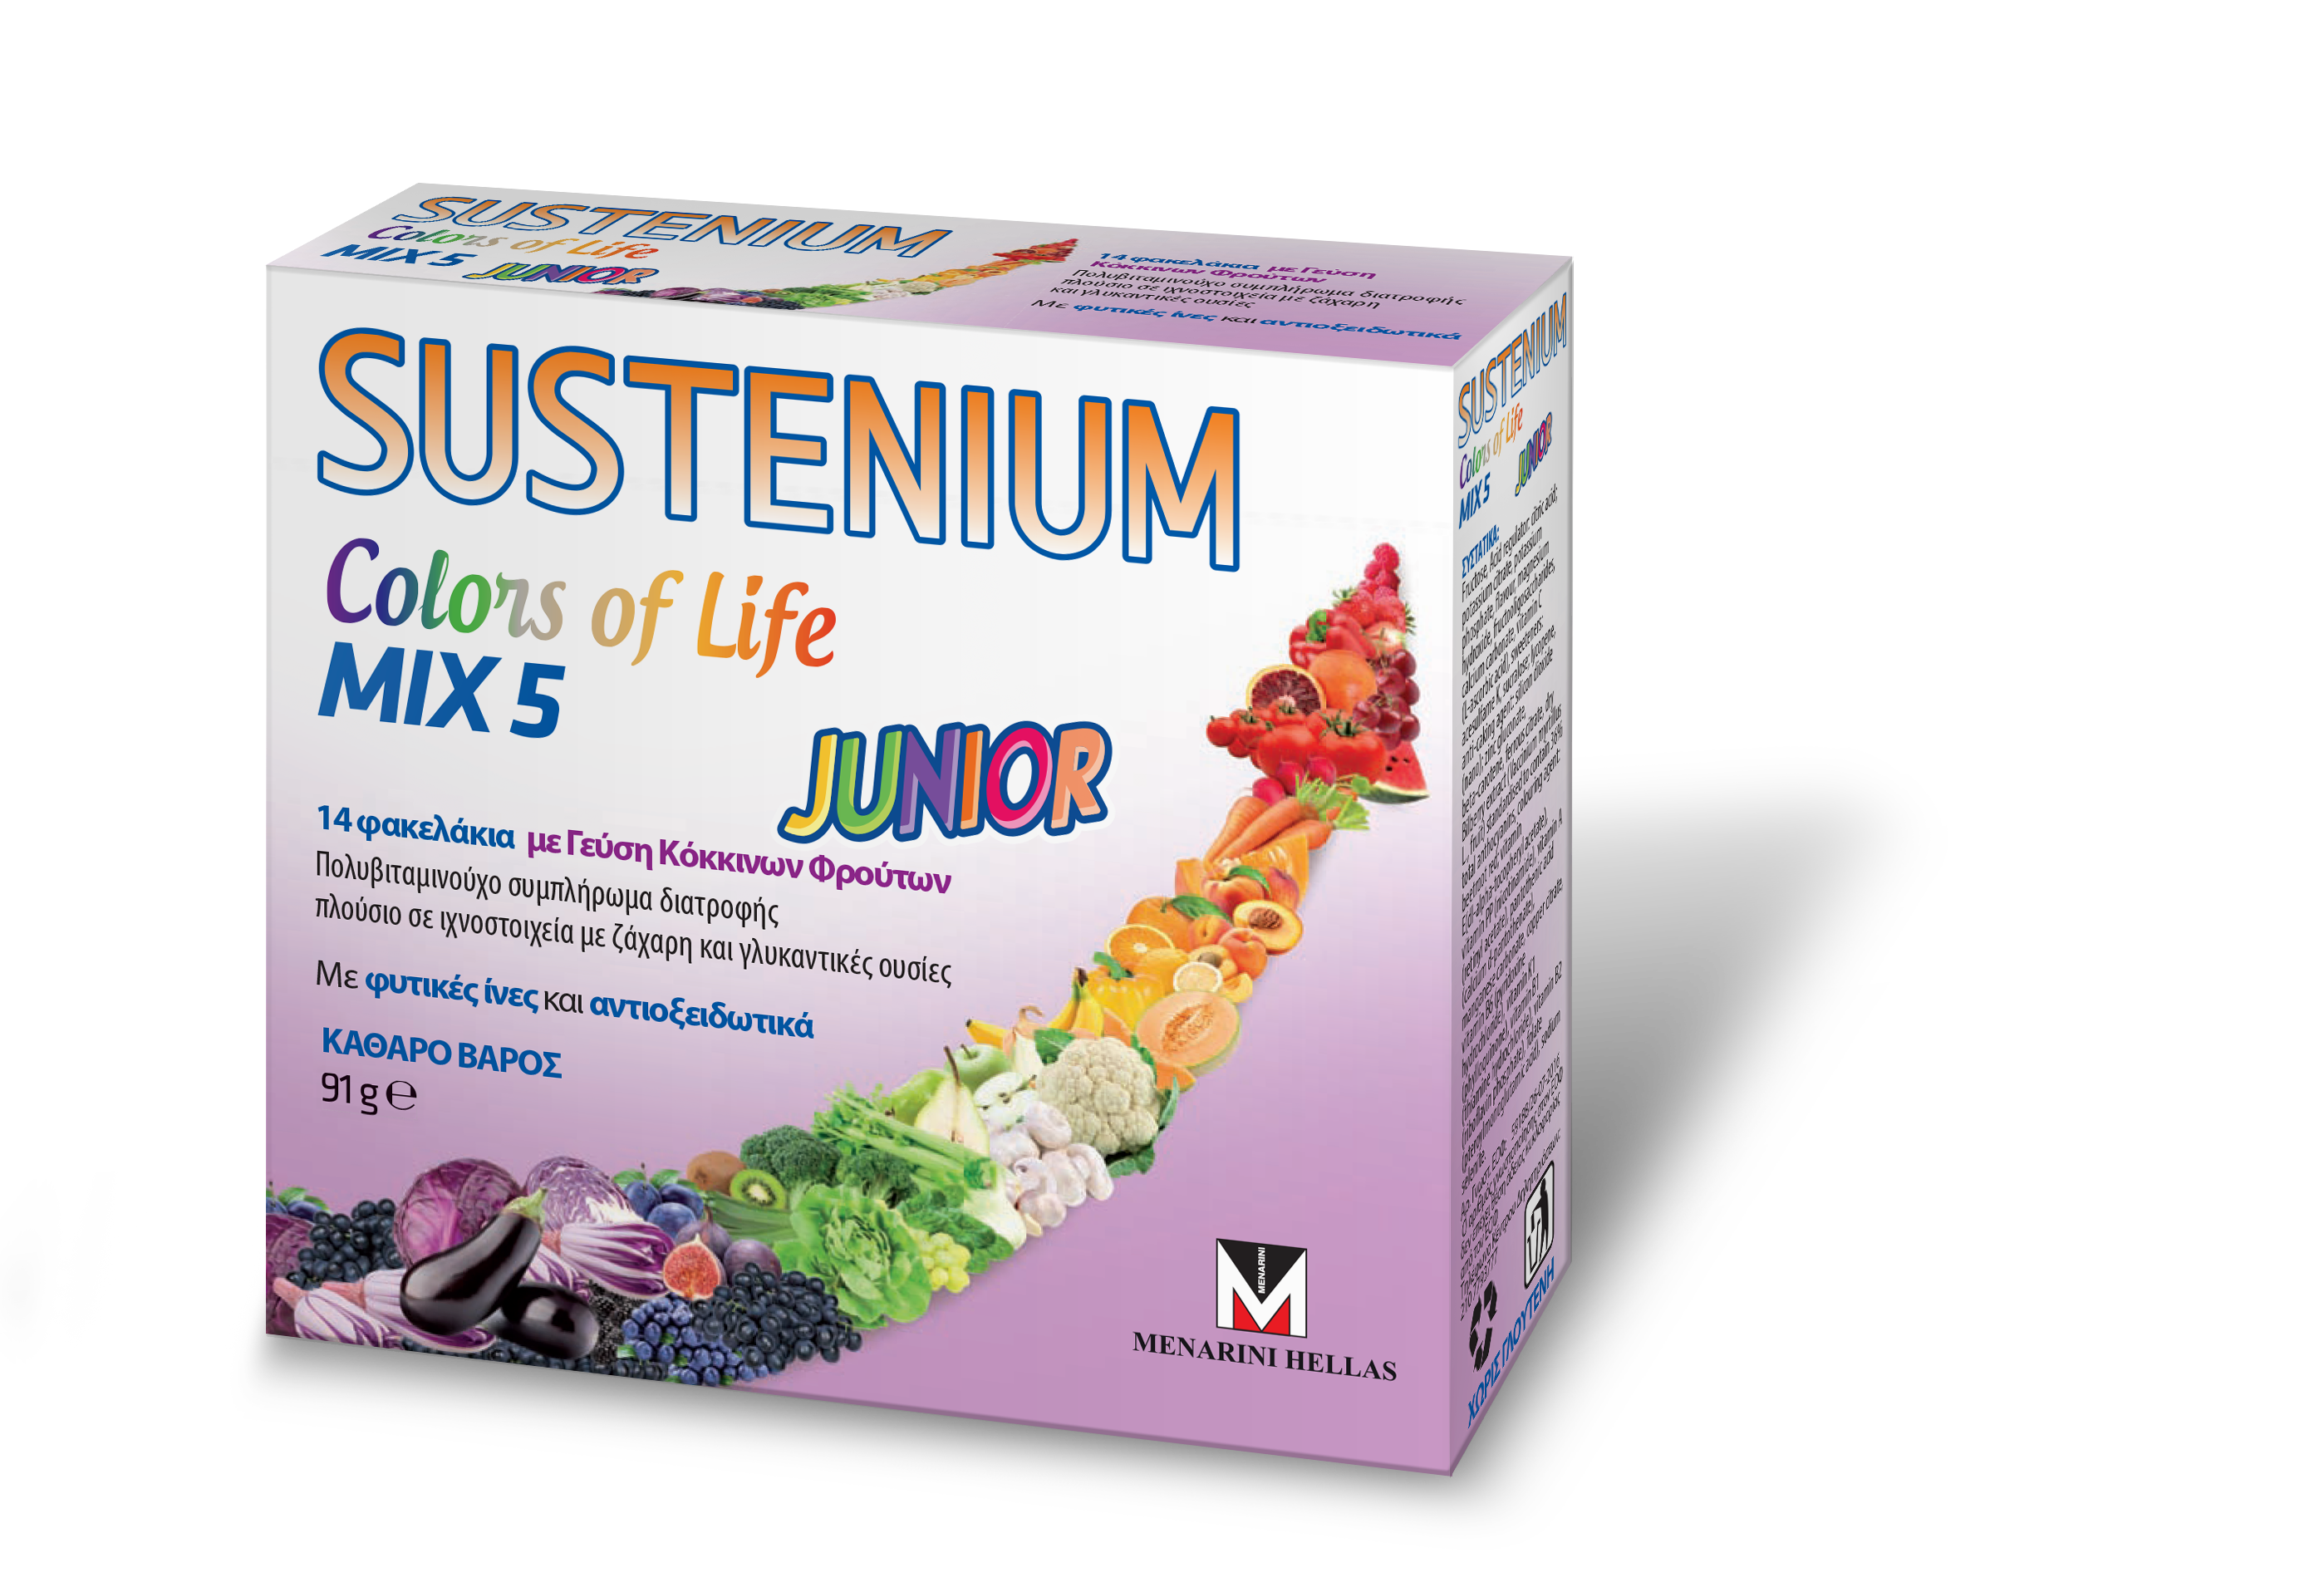 SUSTENIUM Colors of Life Junior - 14 φακελάκια σε σκόνη